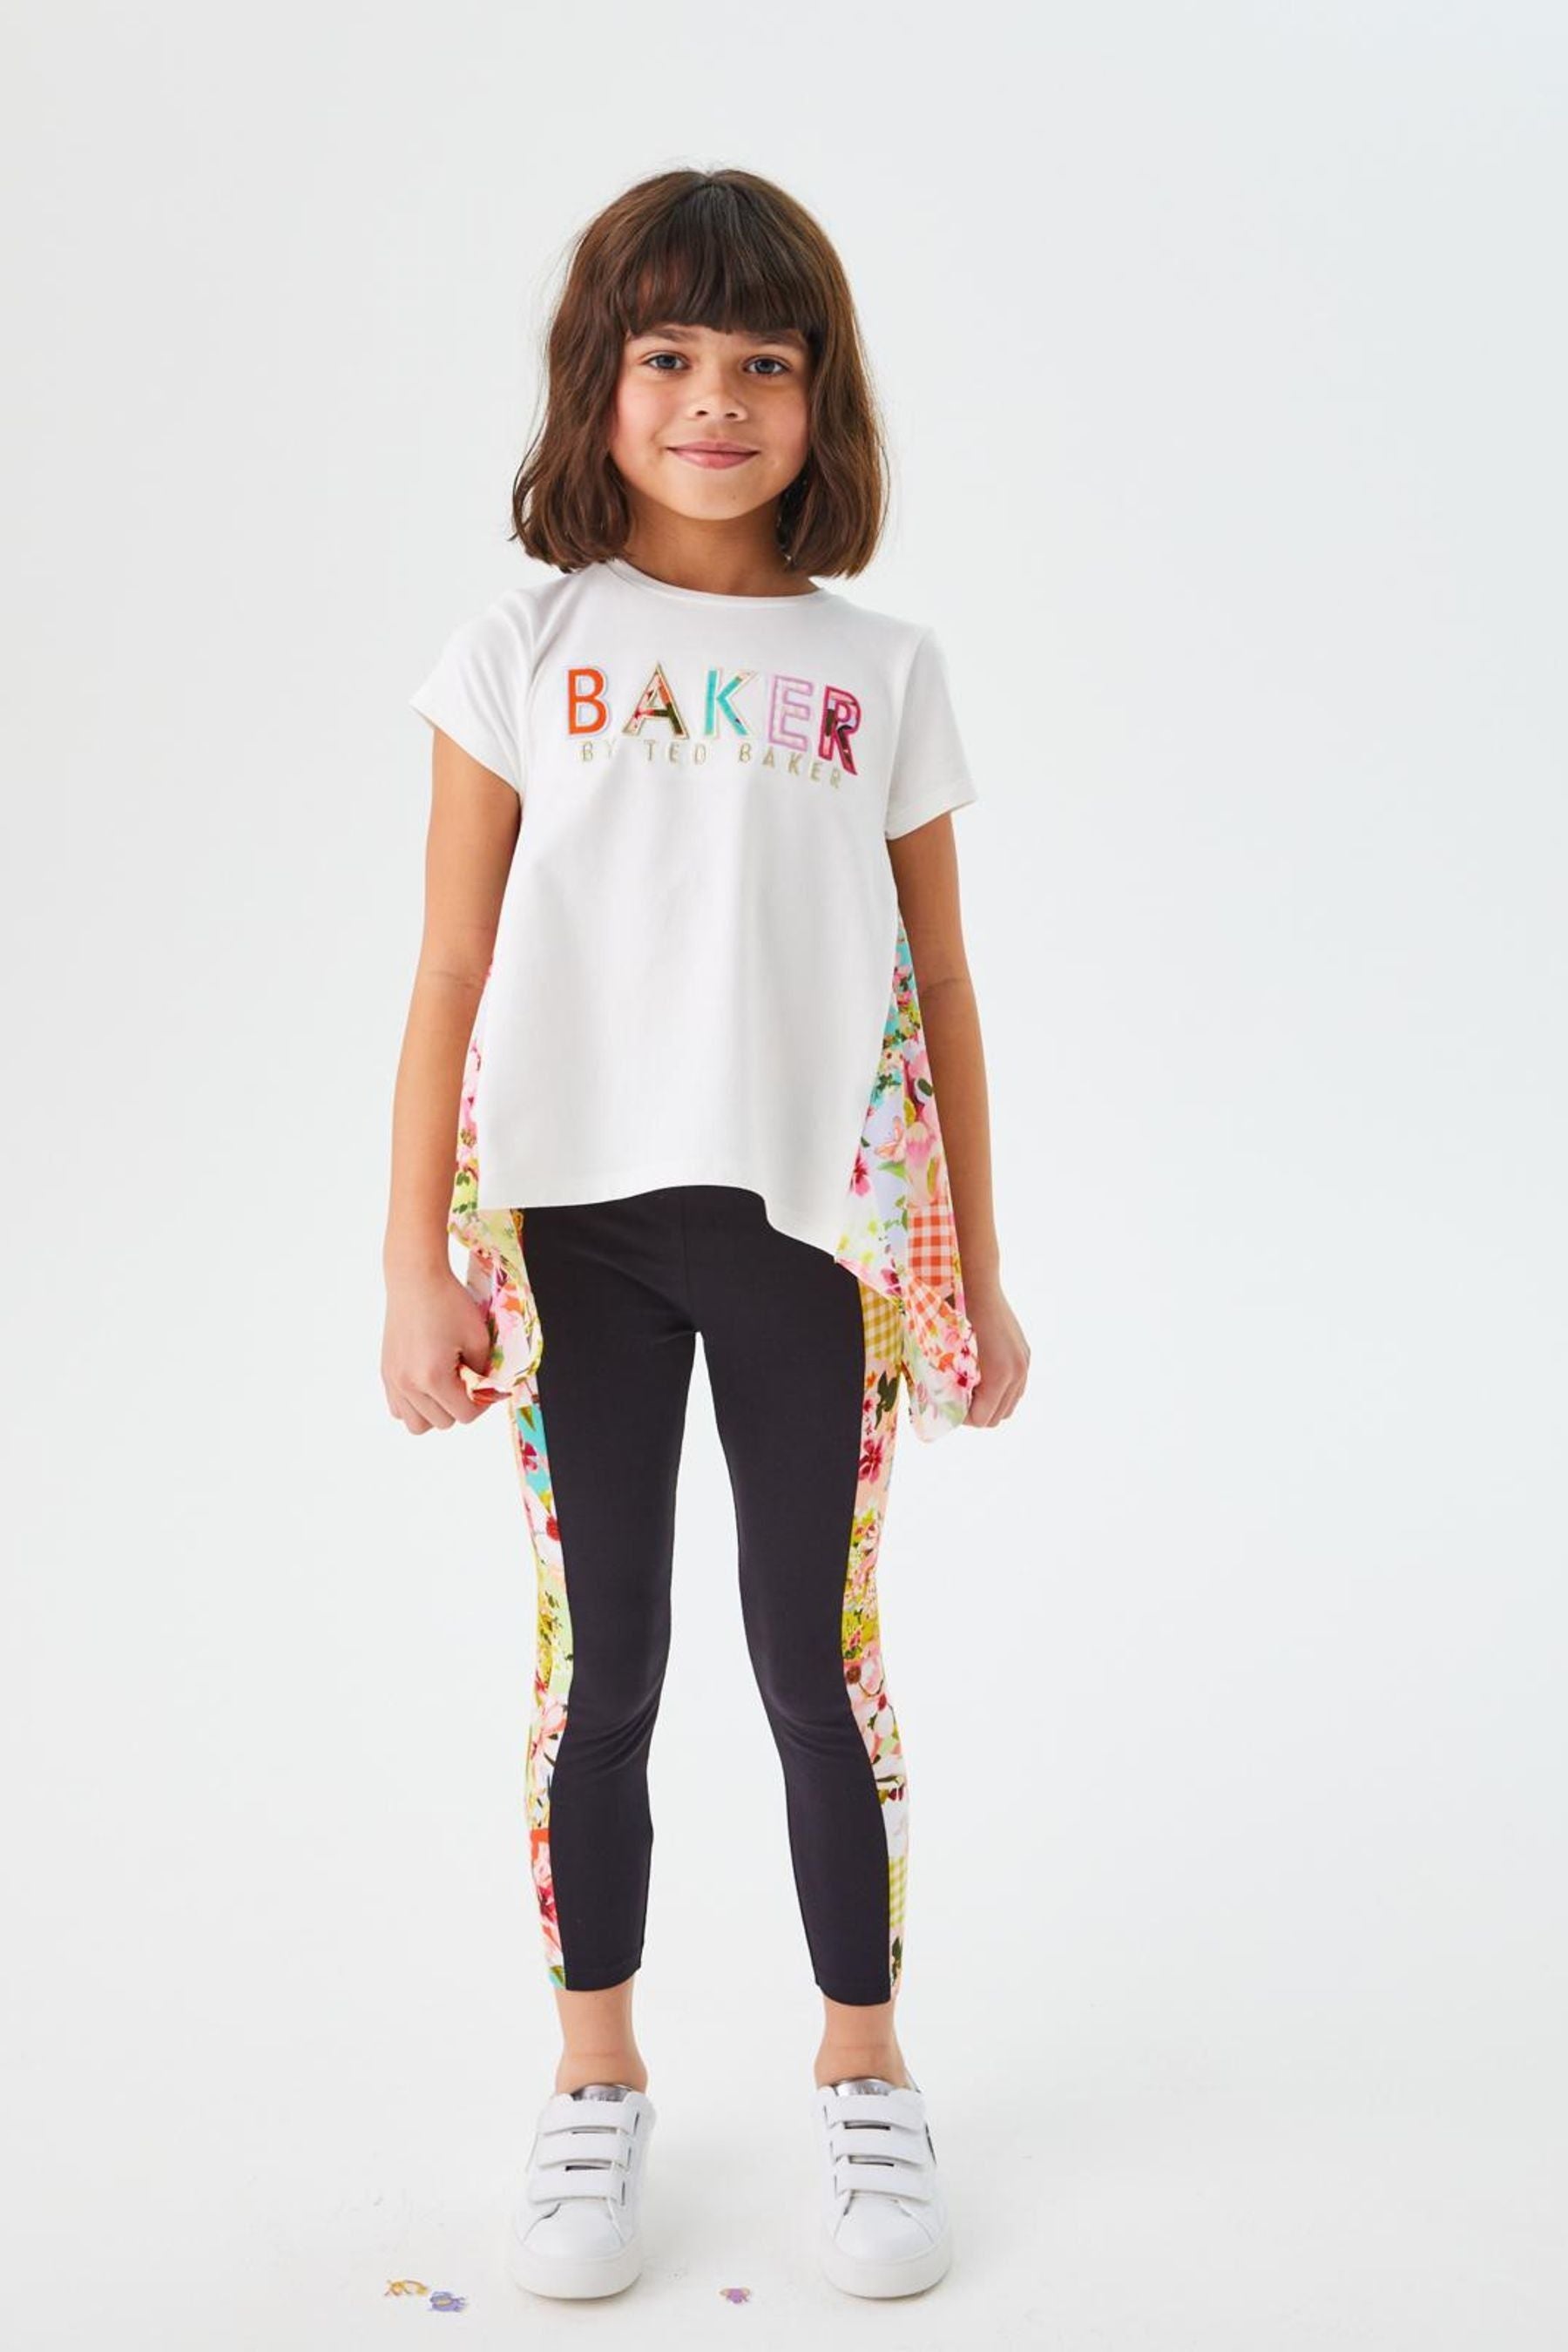 Baker by Ted Baker T-Shirt and Leggings Set